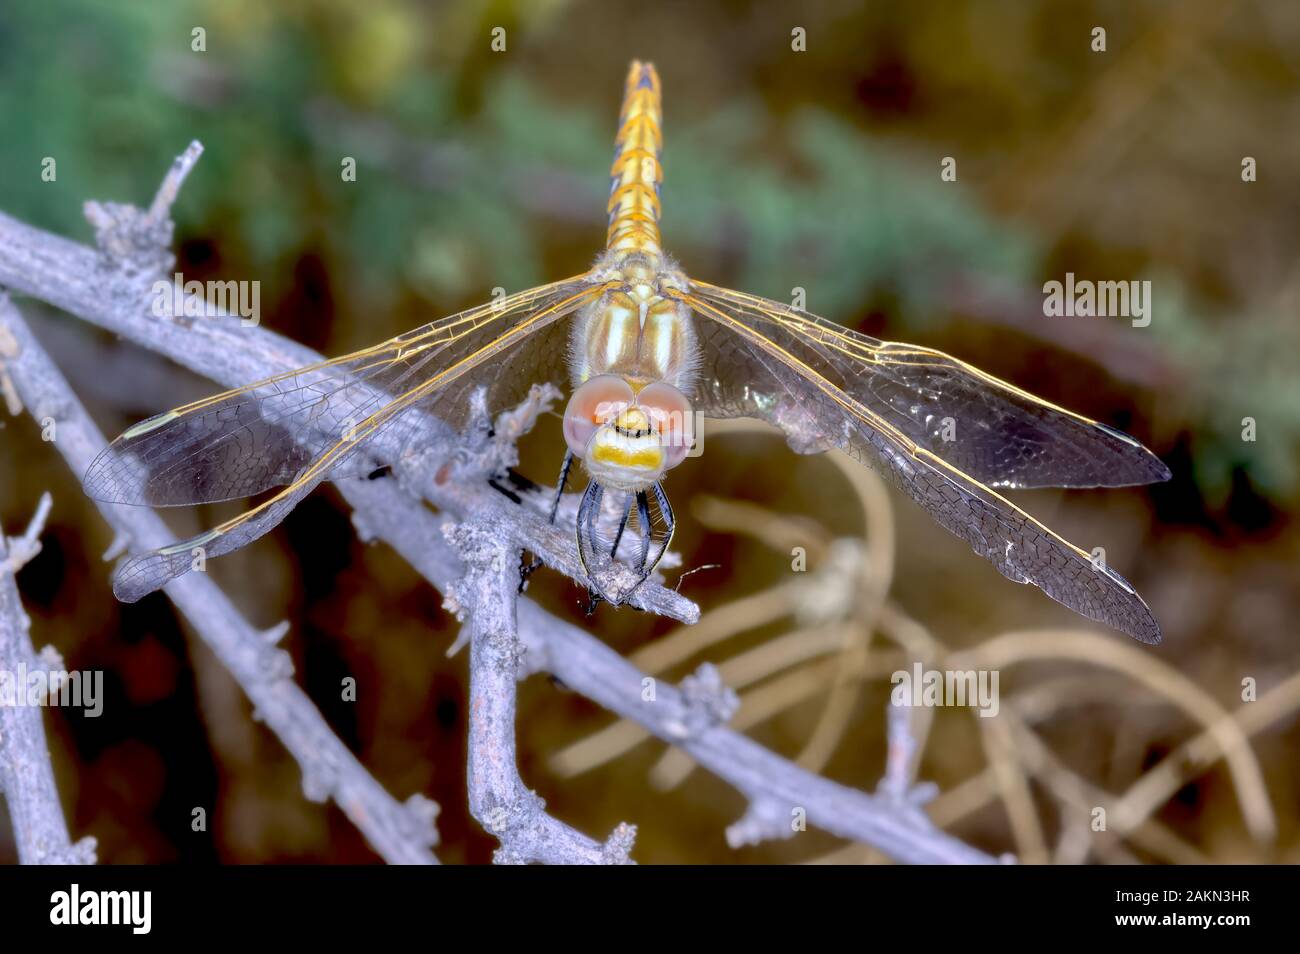 Une libellule originaire d'Arizona perché sur une branche. Banque D'Images